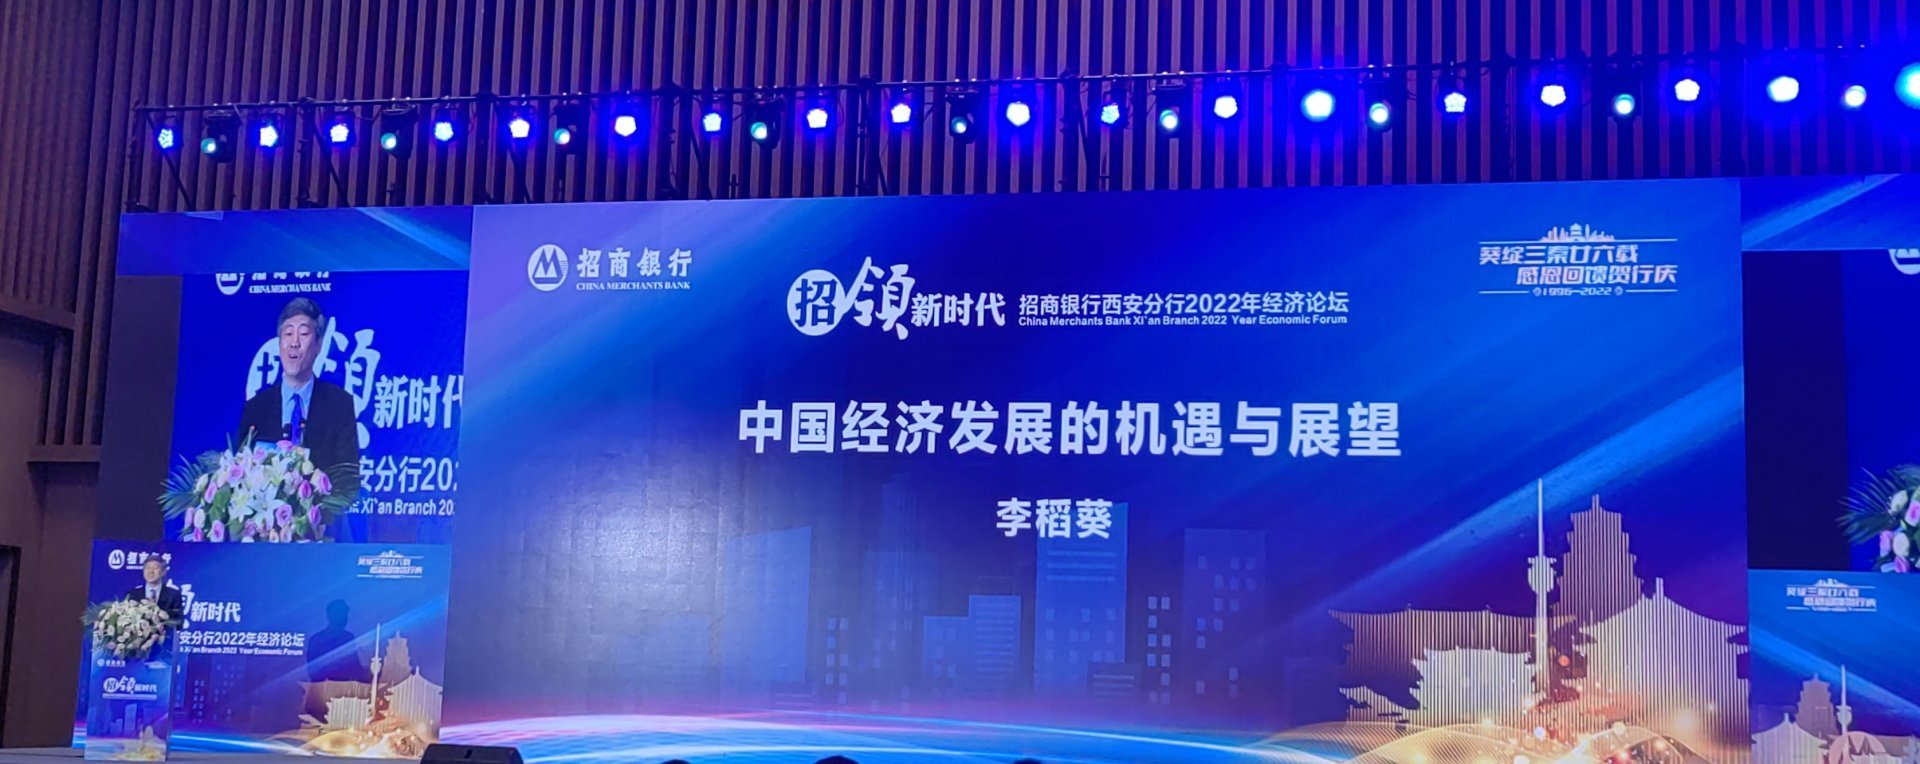 公司受邀參加《2022年中國宏觀經濟形勢分析》主題會議